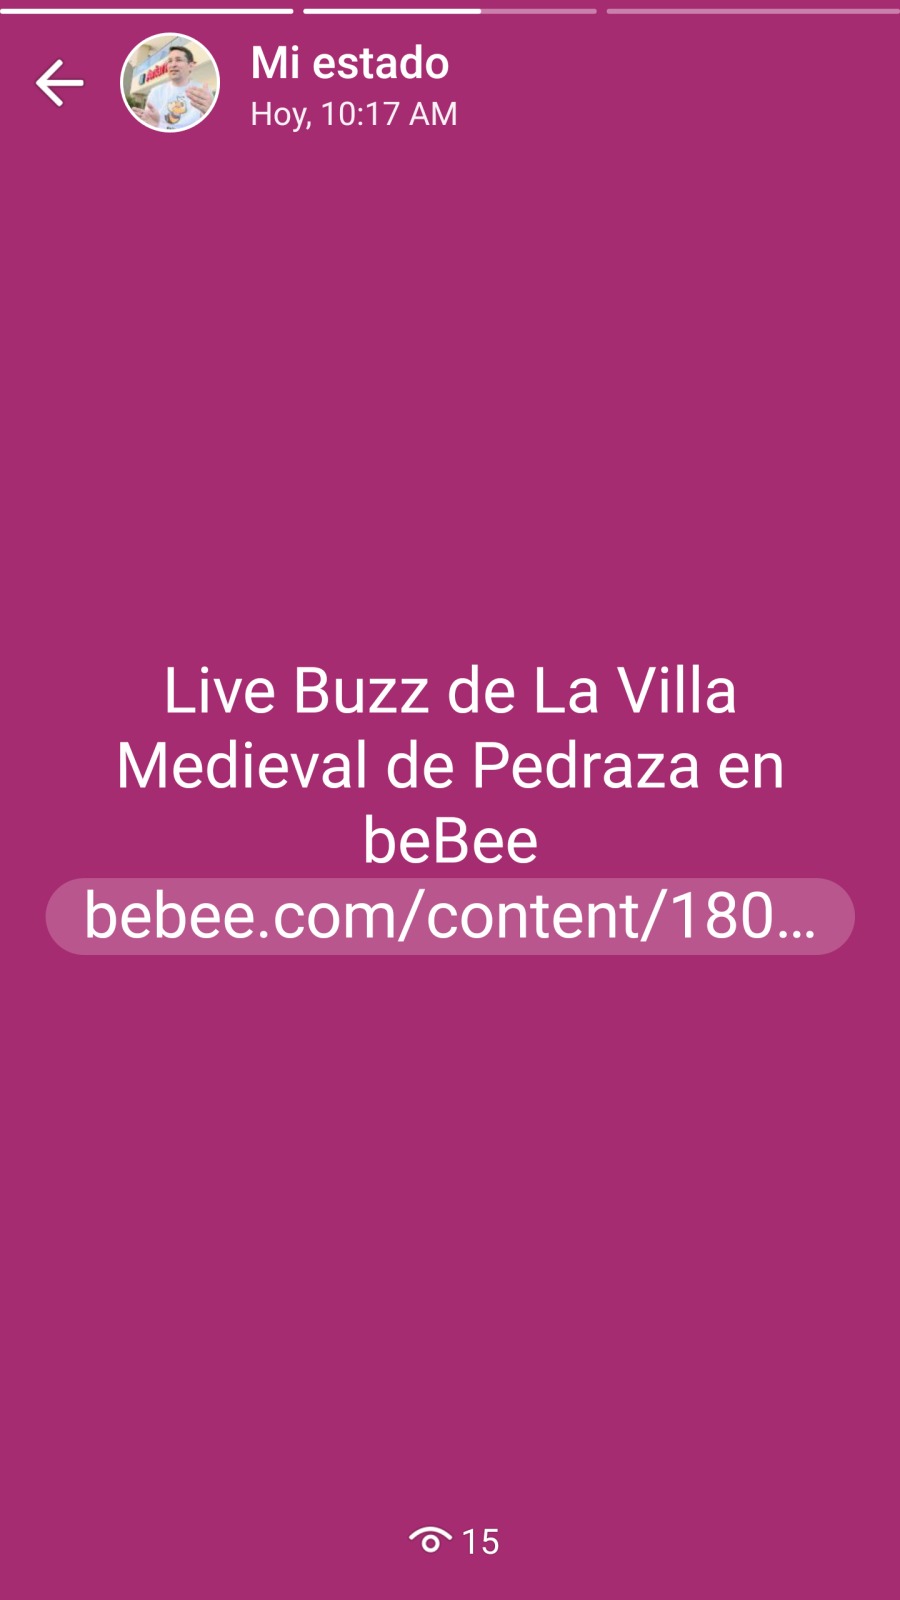 Mi estado
< CY Hoy, 10:17 AM

Live Buzz de La Villa
Medieval de Pedraza en
beBee
bebee.com/content/180...